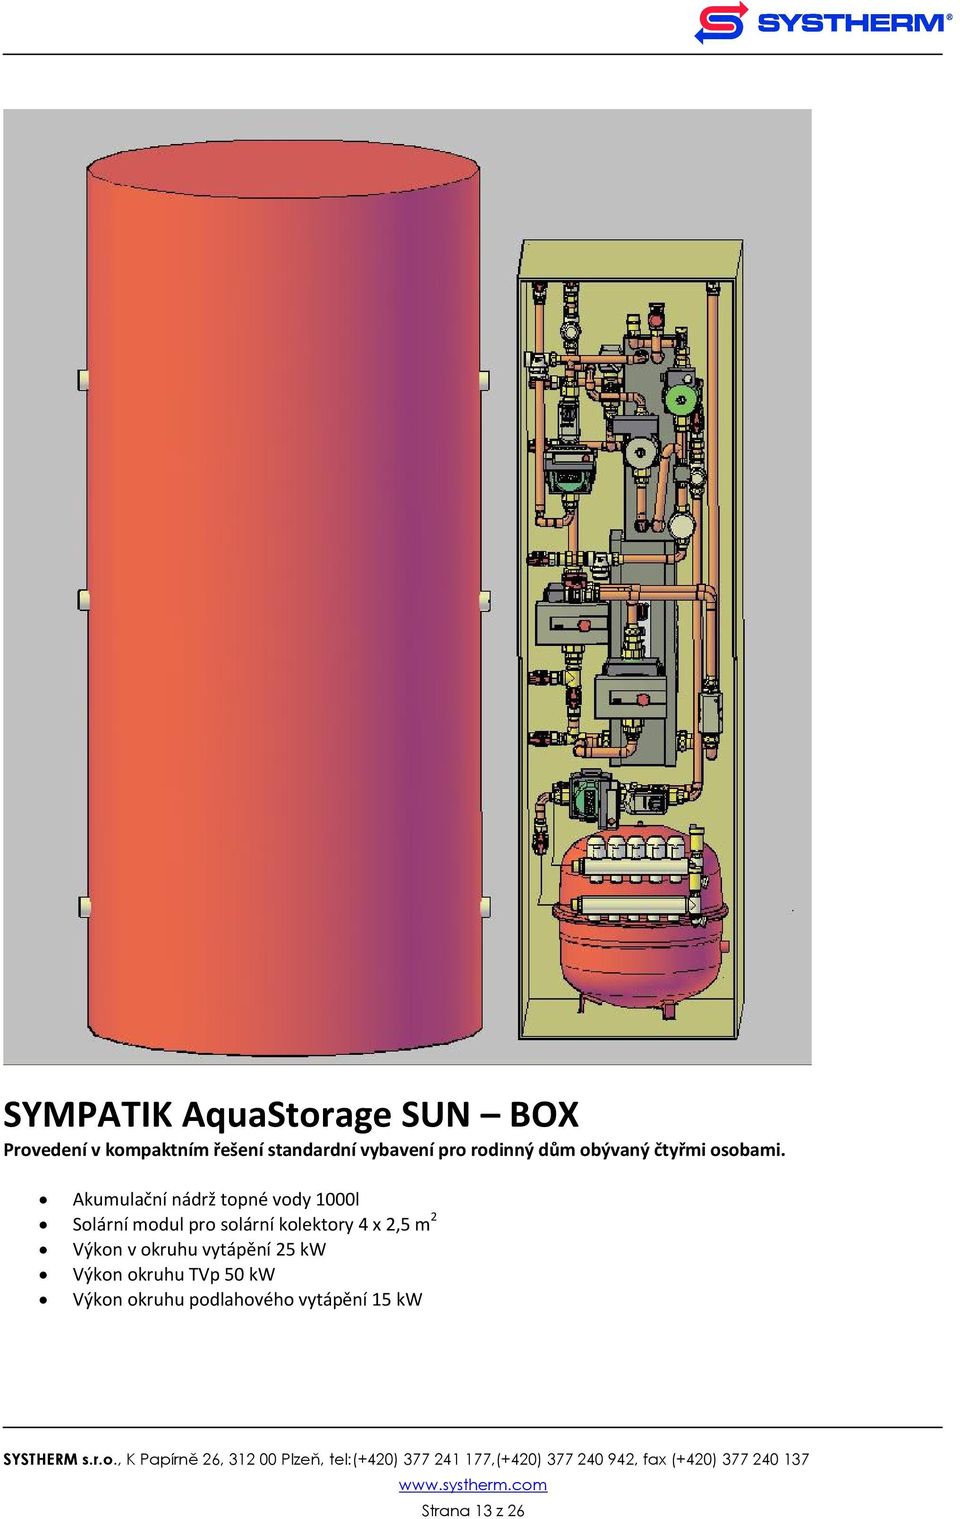 Akumulační nádrž topné vody 1000l Solární modul pro solární kolektory 4 x